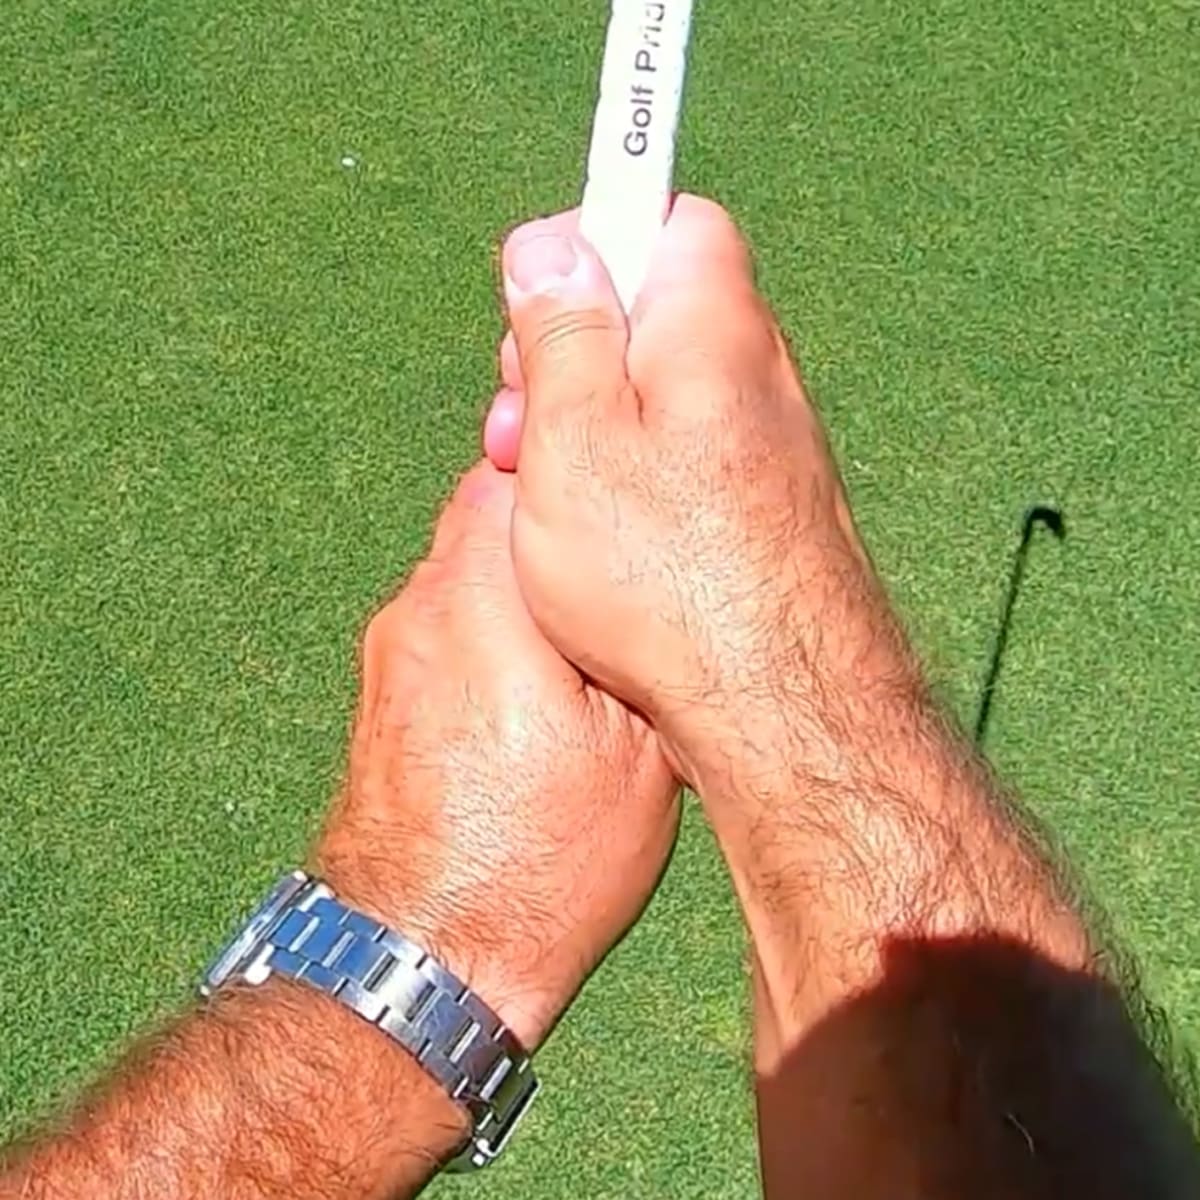 What Is A Neutral Golf Grip?